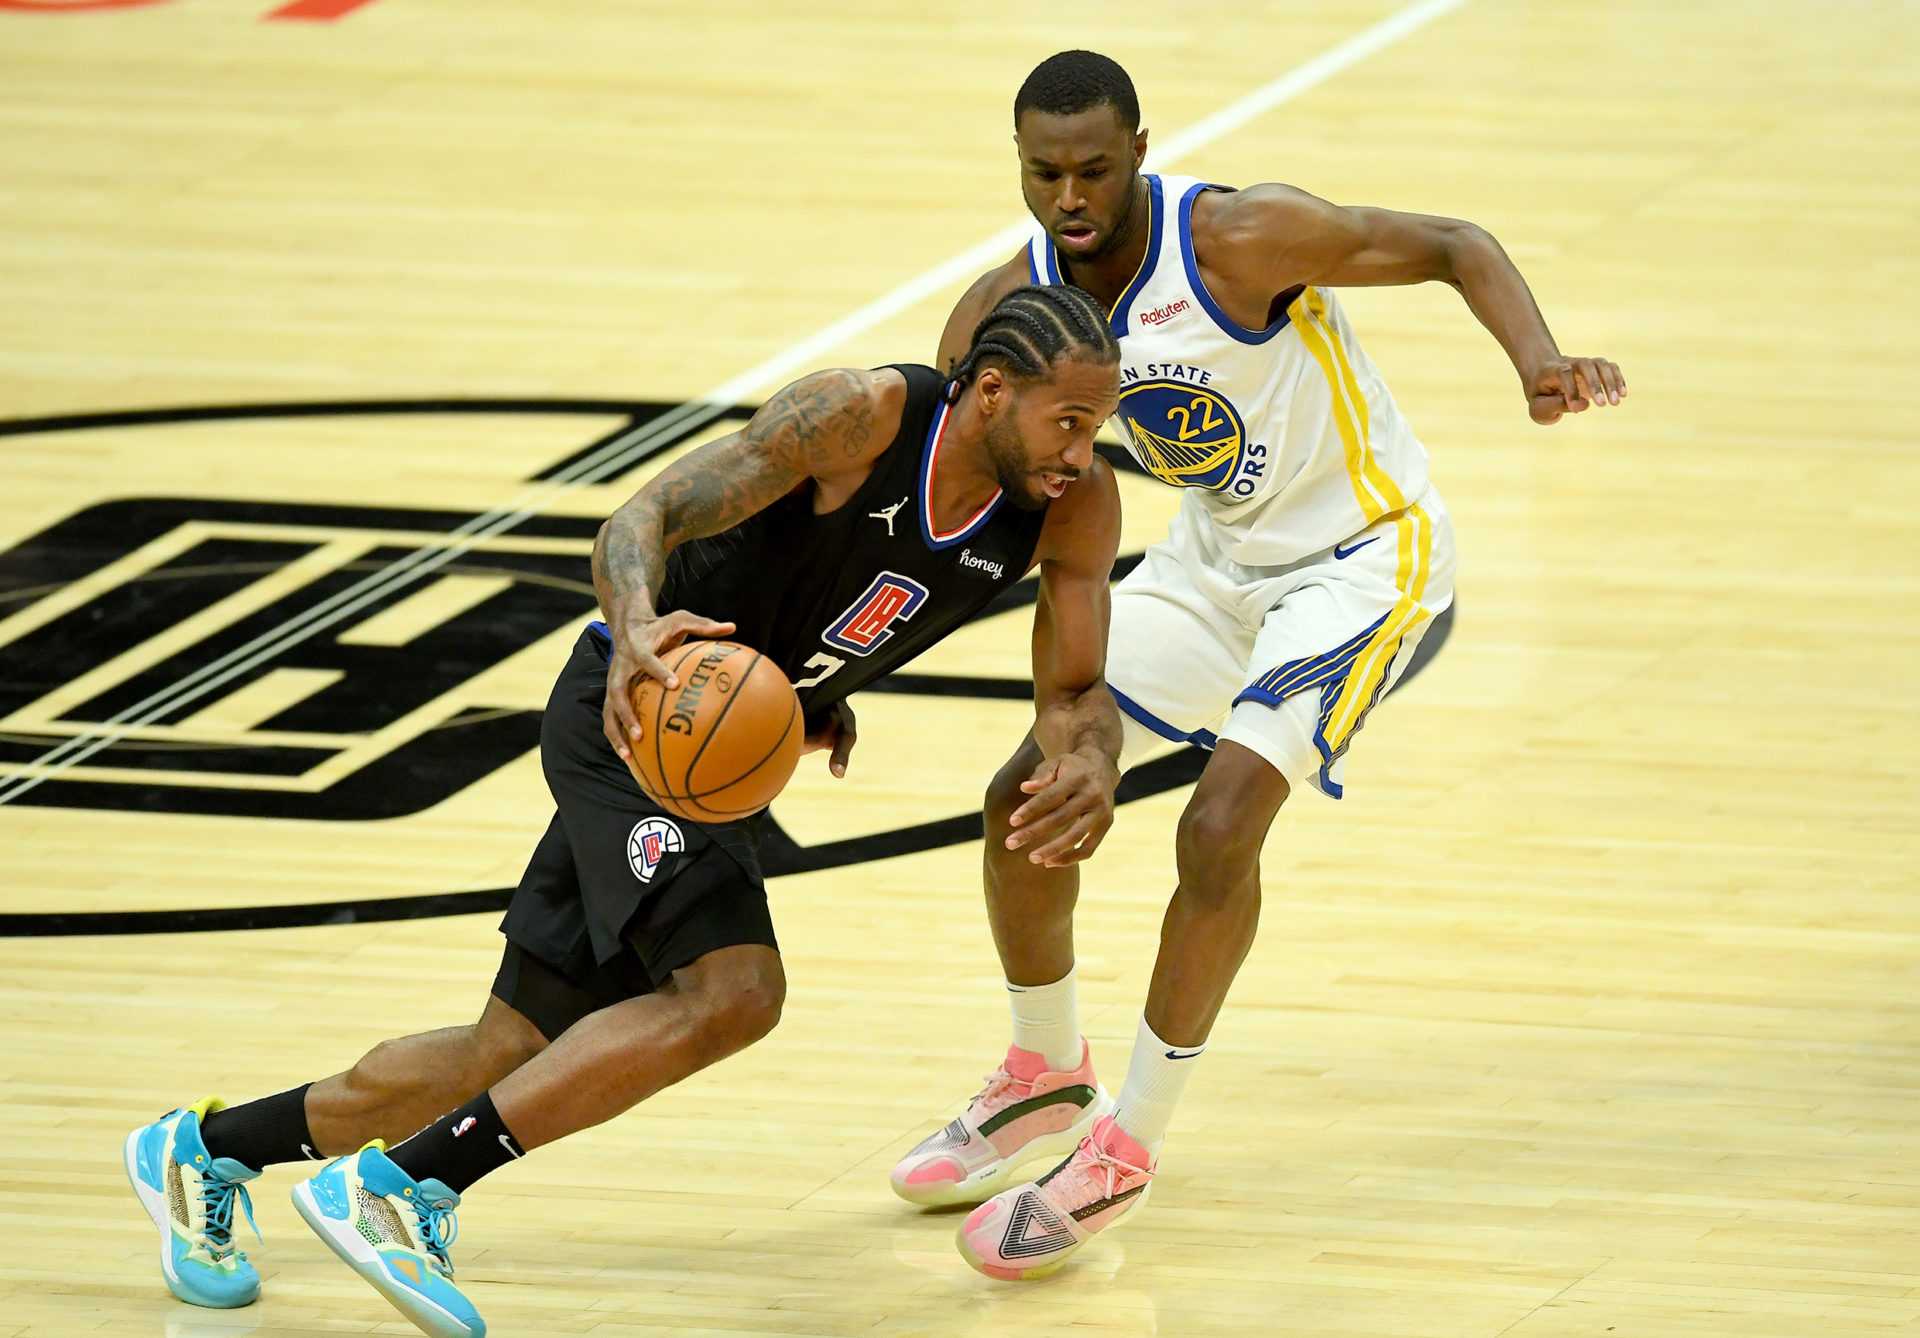 `` Apporte de l'énergie au jeu '': Kawhi Leonard de Clippers salue Zion Williamson